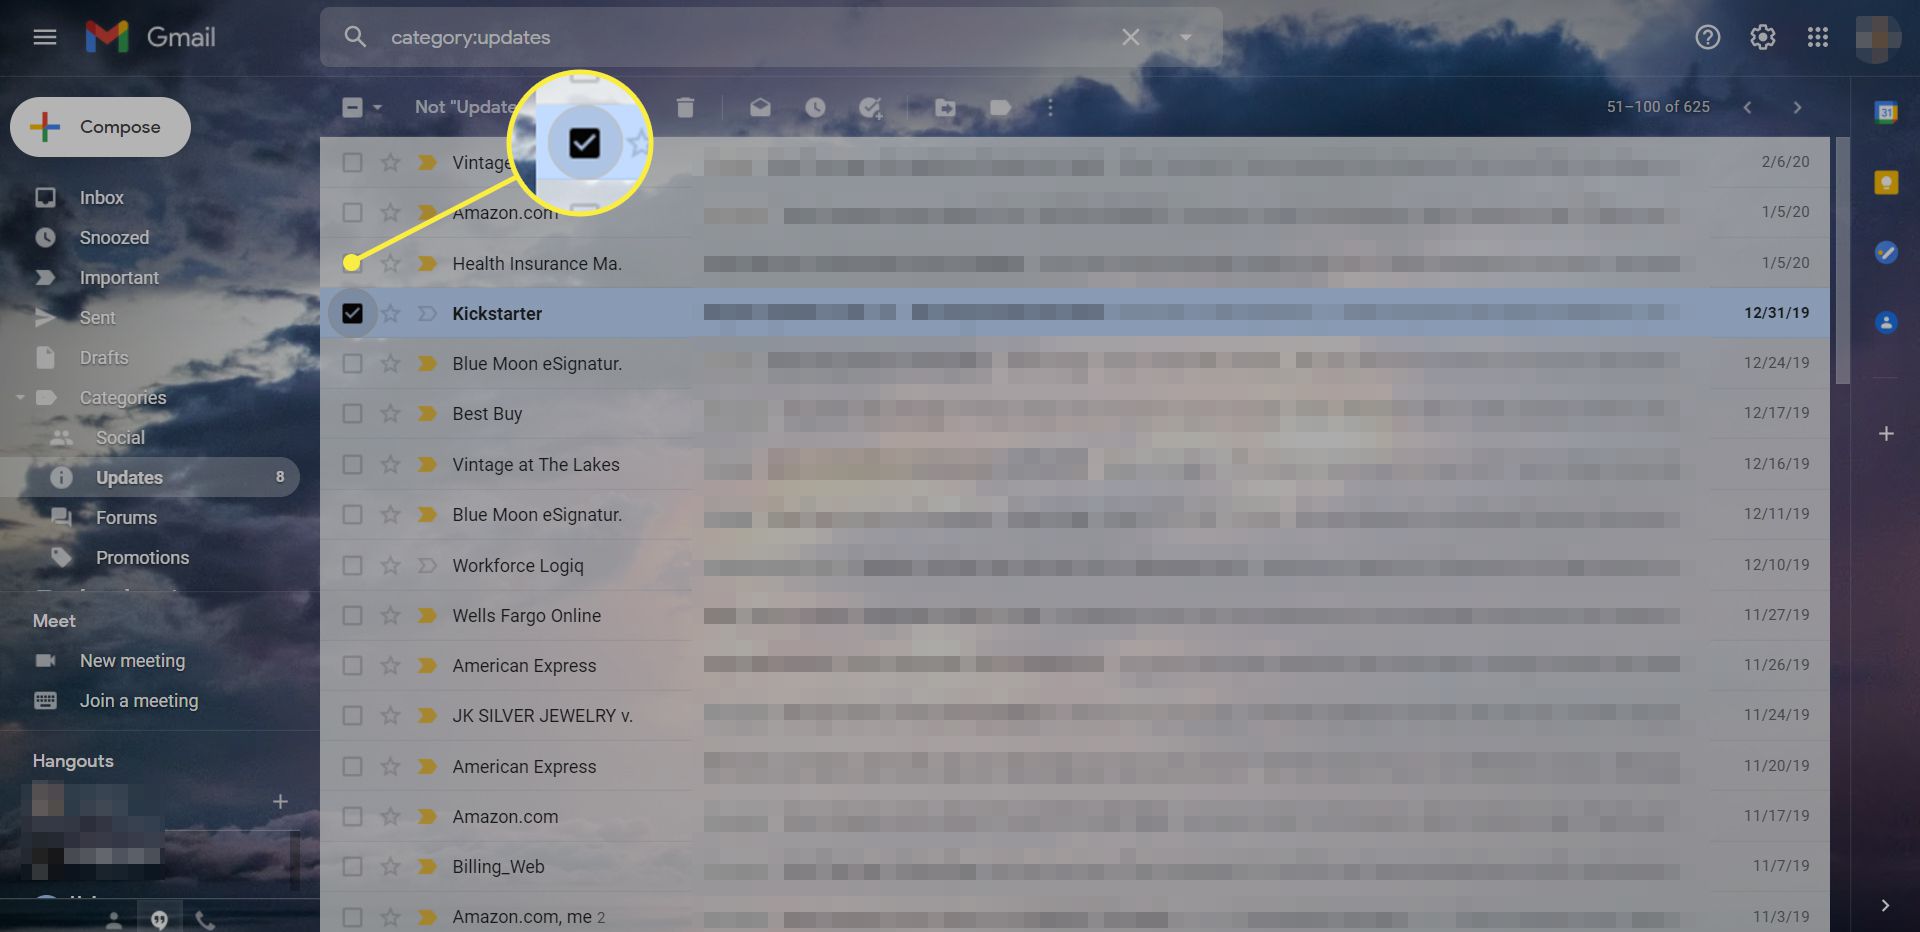 Doručená pošta služby Gmail s vybraným jediným e-mailem